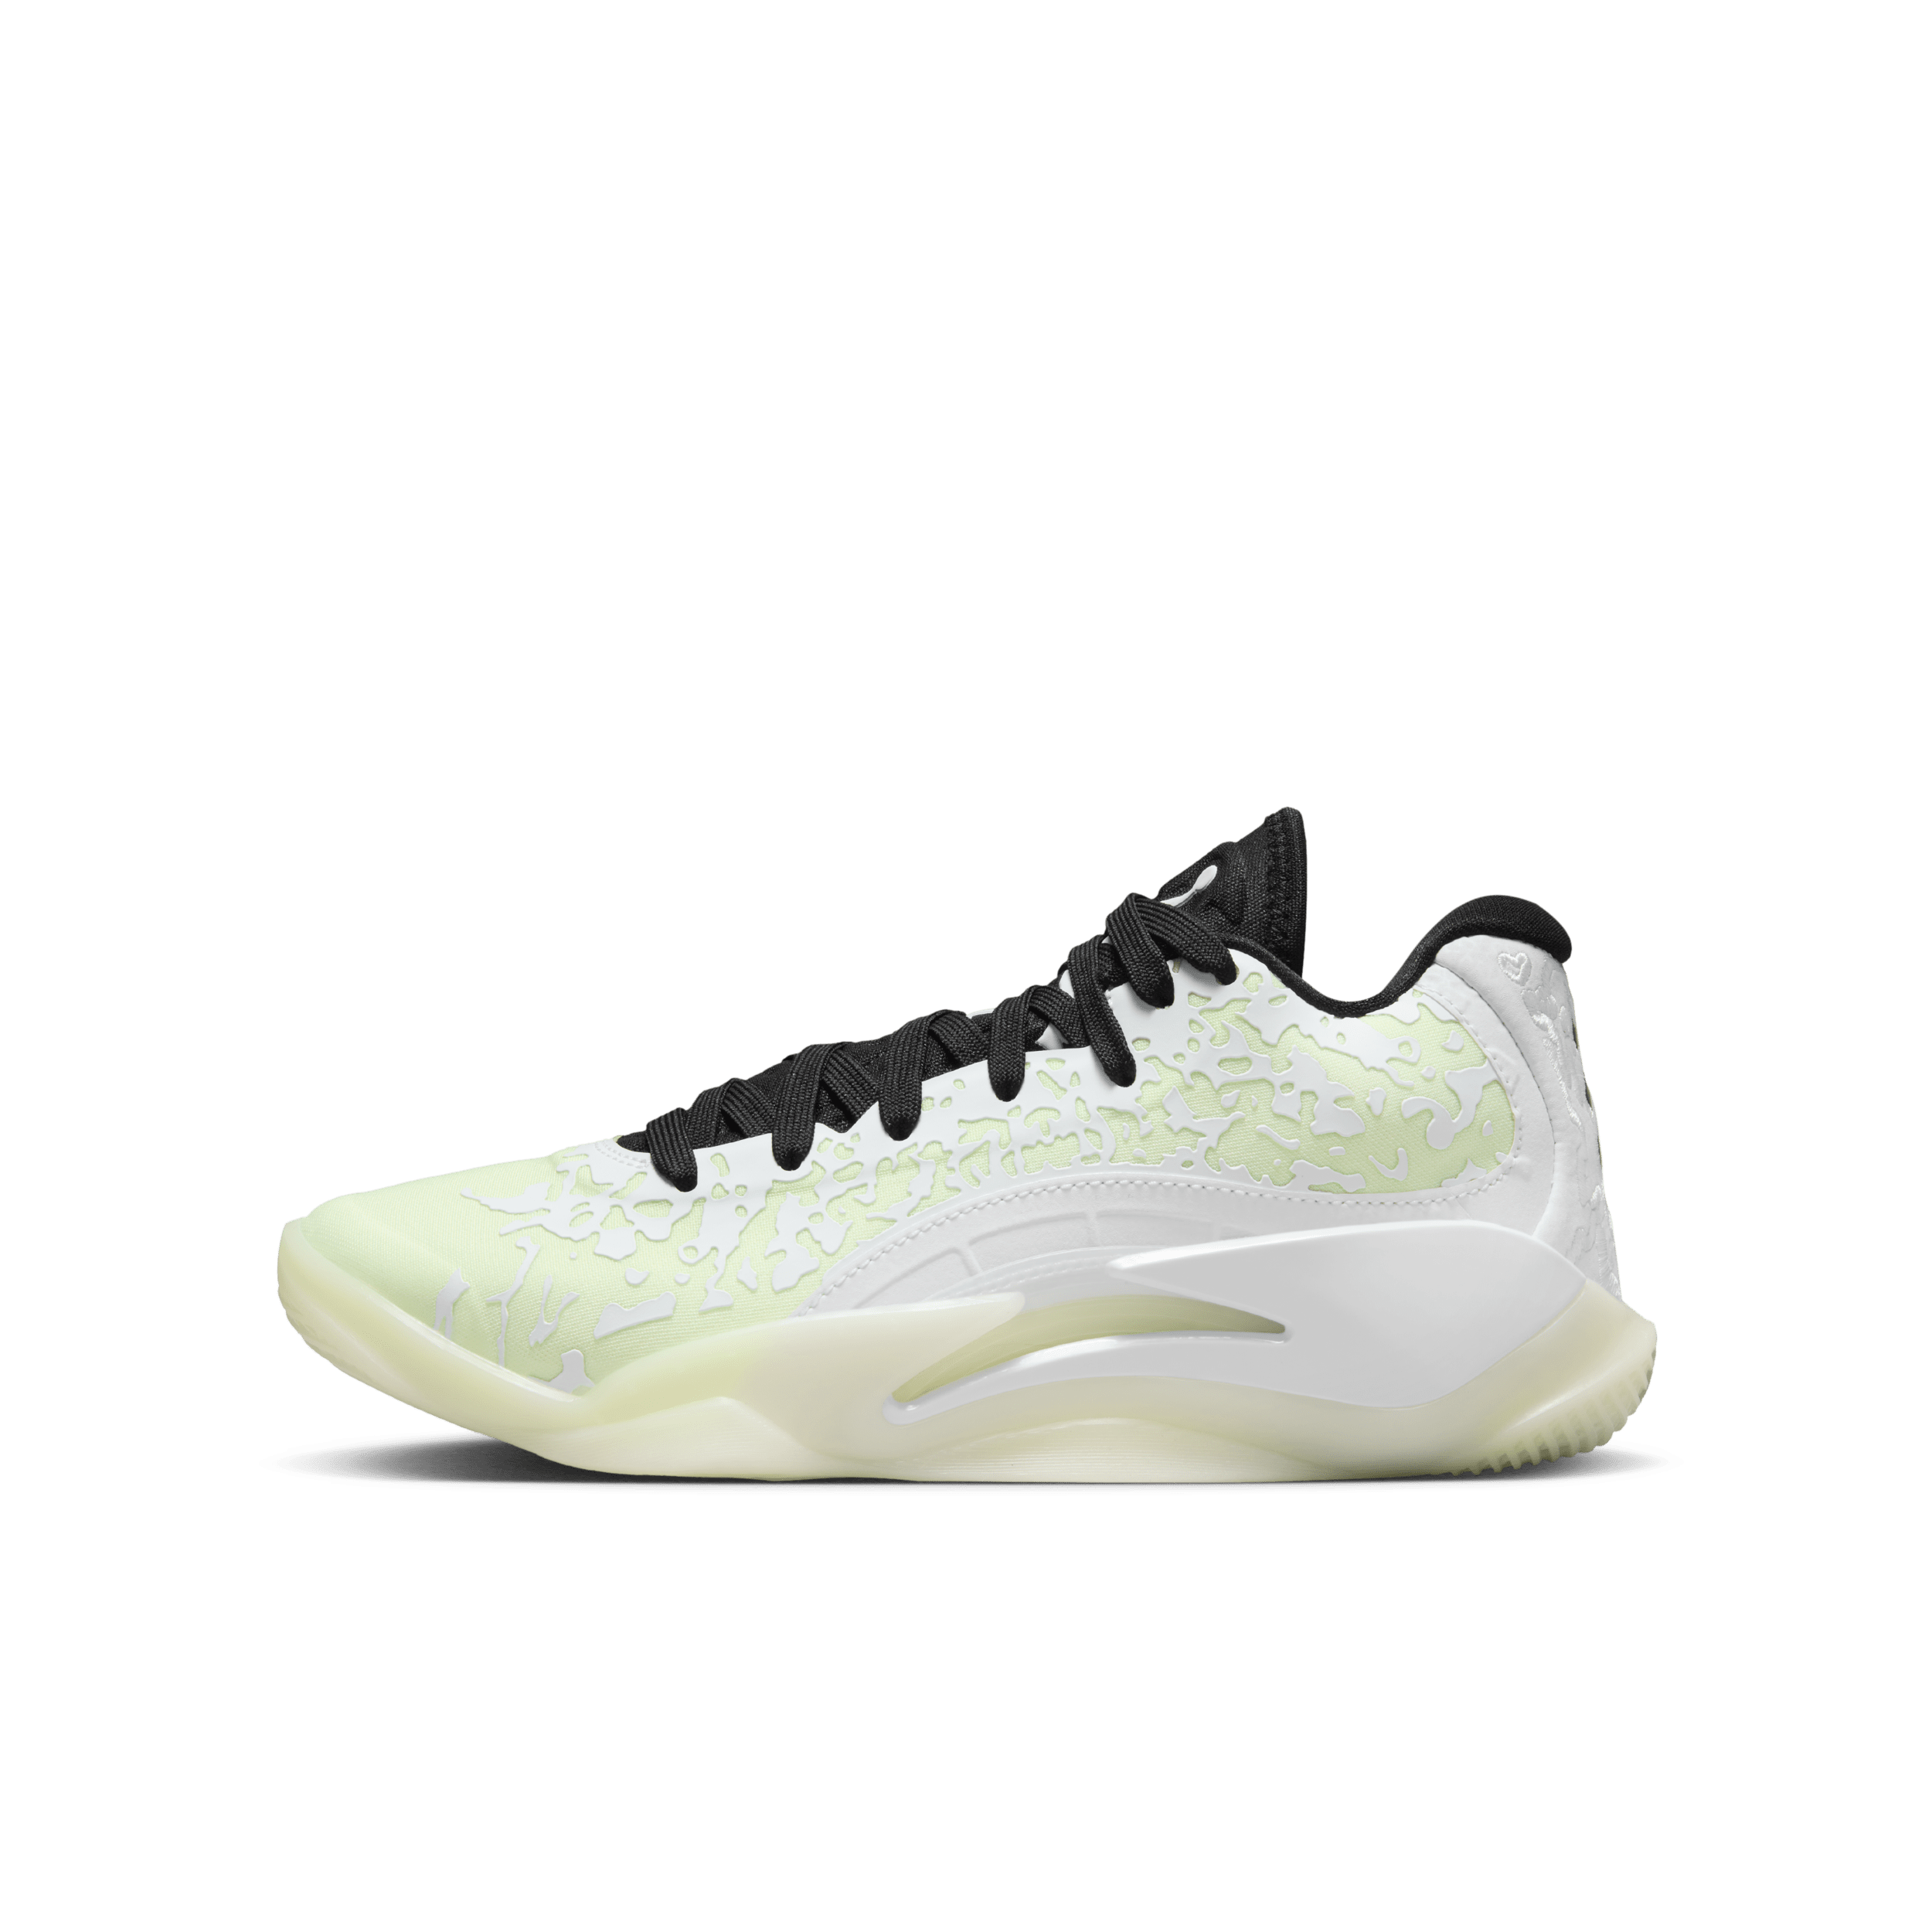 Nike Zion 3-basketballsko til større børn - hvid